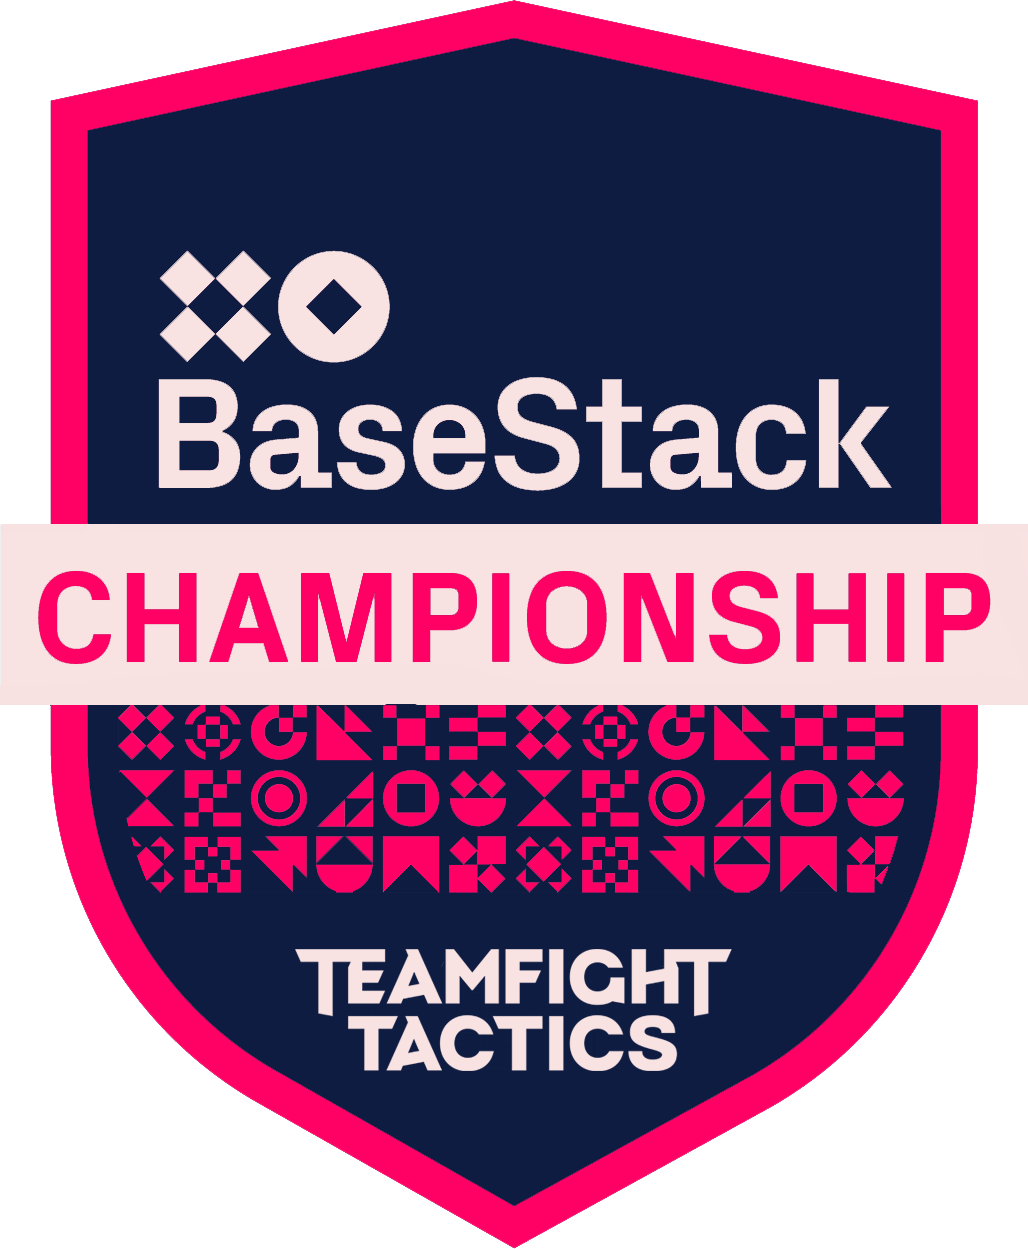 Mistrzostwa Basestack dla Teamfight Tactics. W kształcie tarczy i w neonowych różowo-niebieskich kolorach.